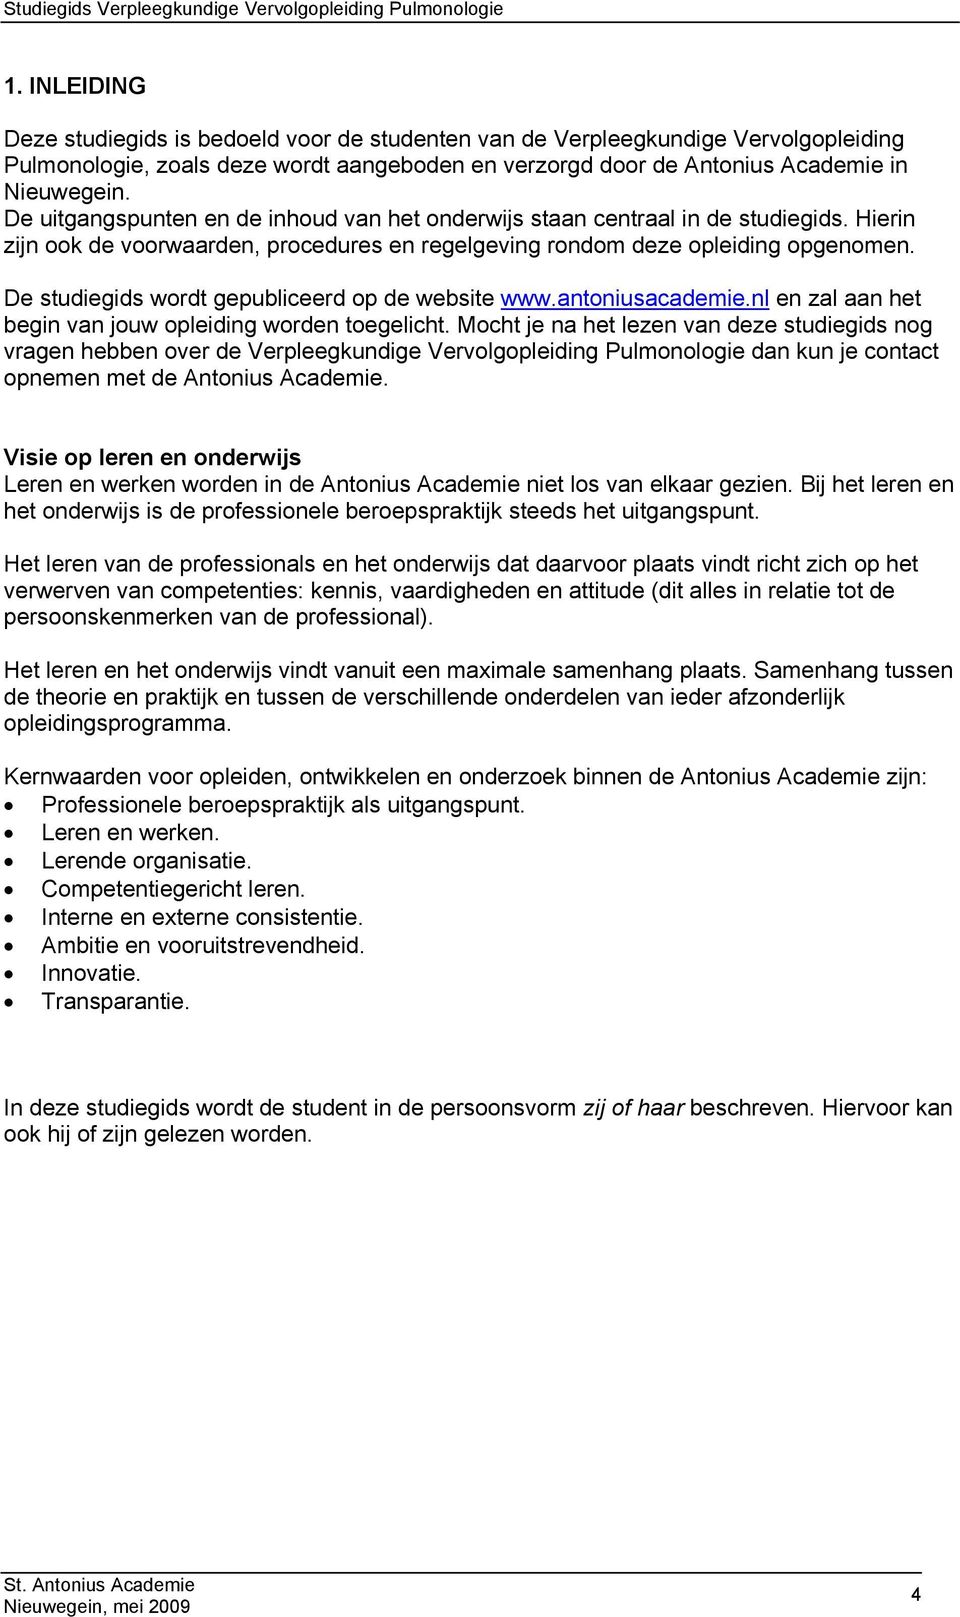 De studiegids wordt gepubliceerd op de website www.antoniusacademie.nl en zal aan het begin van jouw opleiding worden toegelicht.